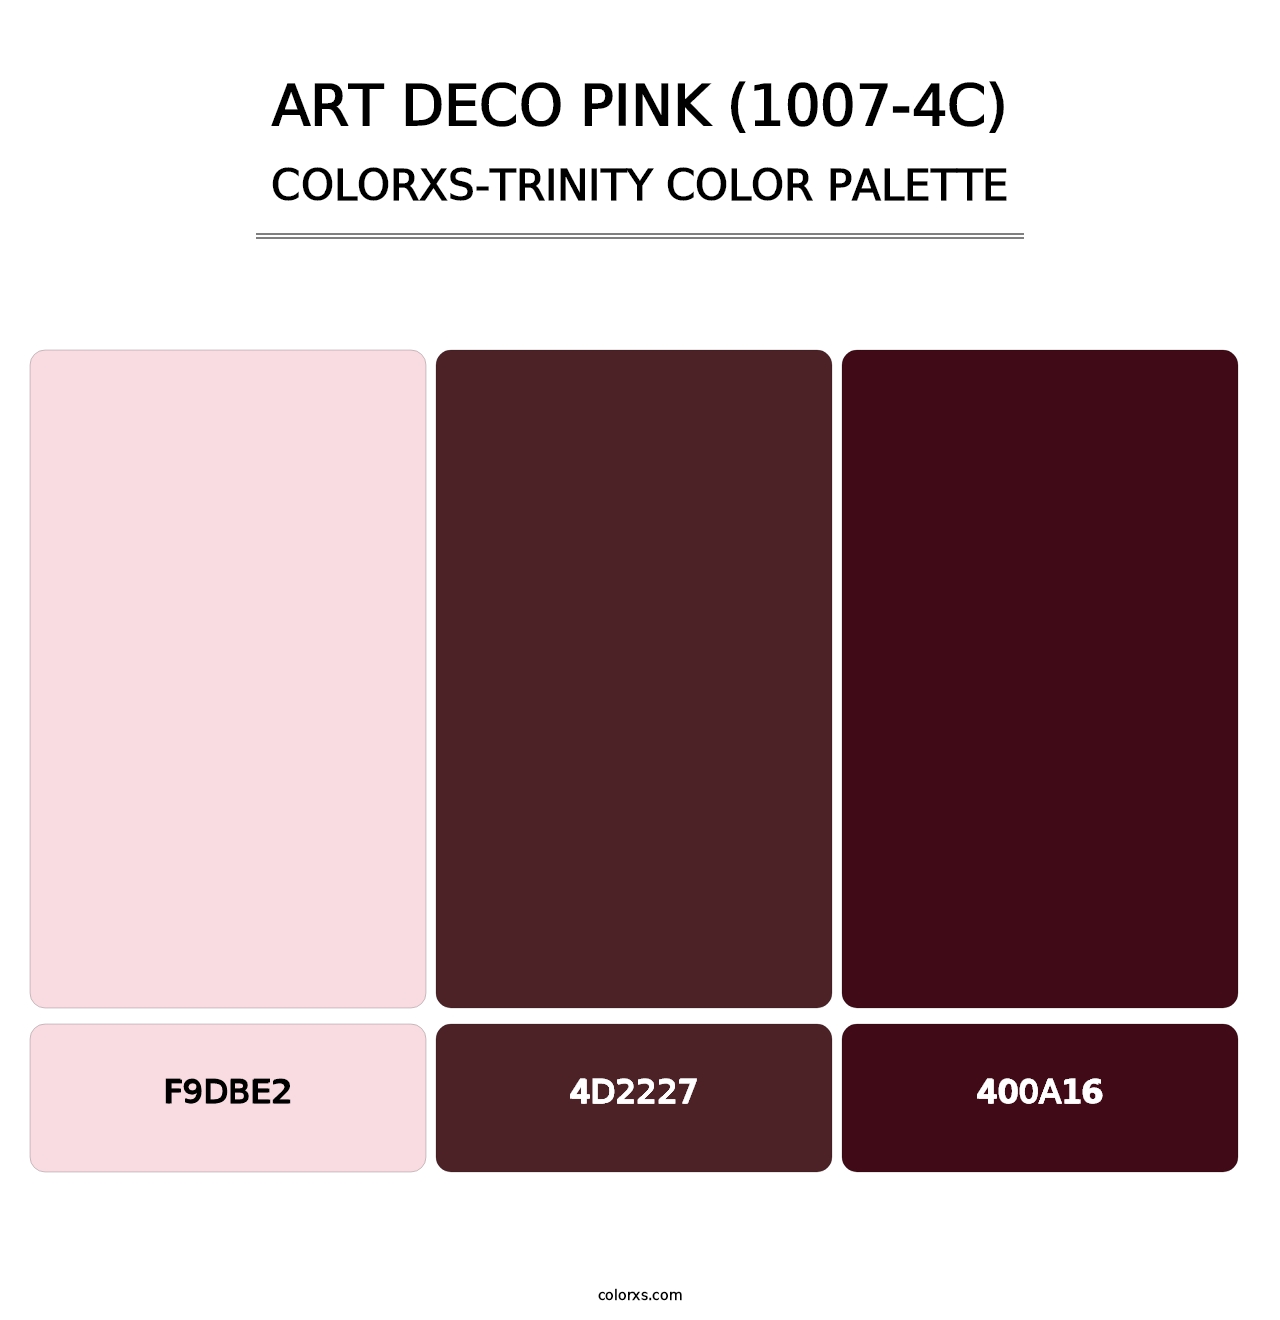 Art Deco Pink (1007-4C) - Colorxs Trinity Palette